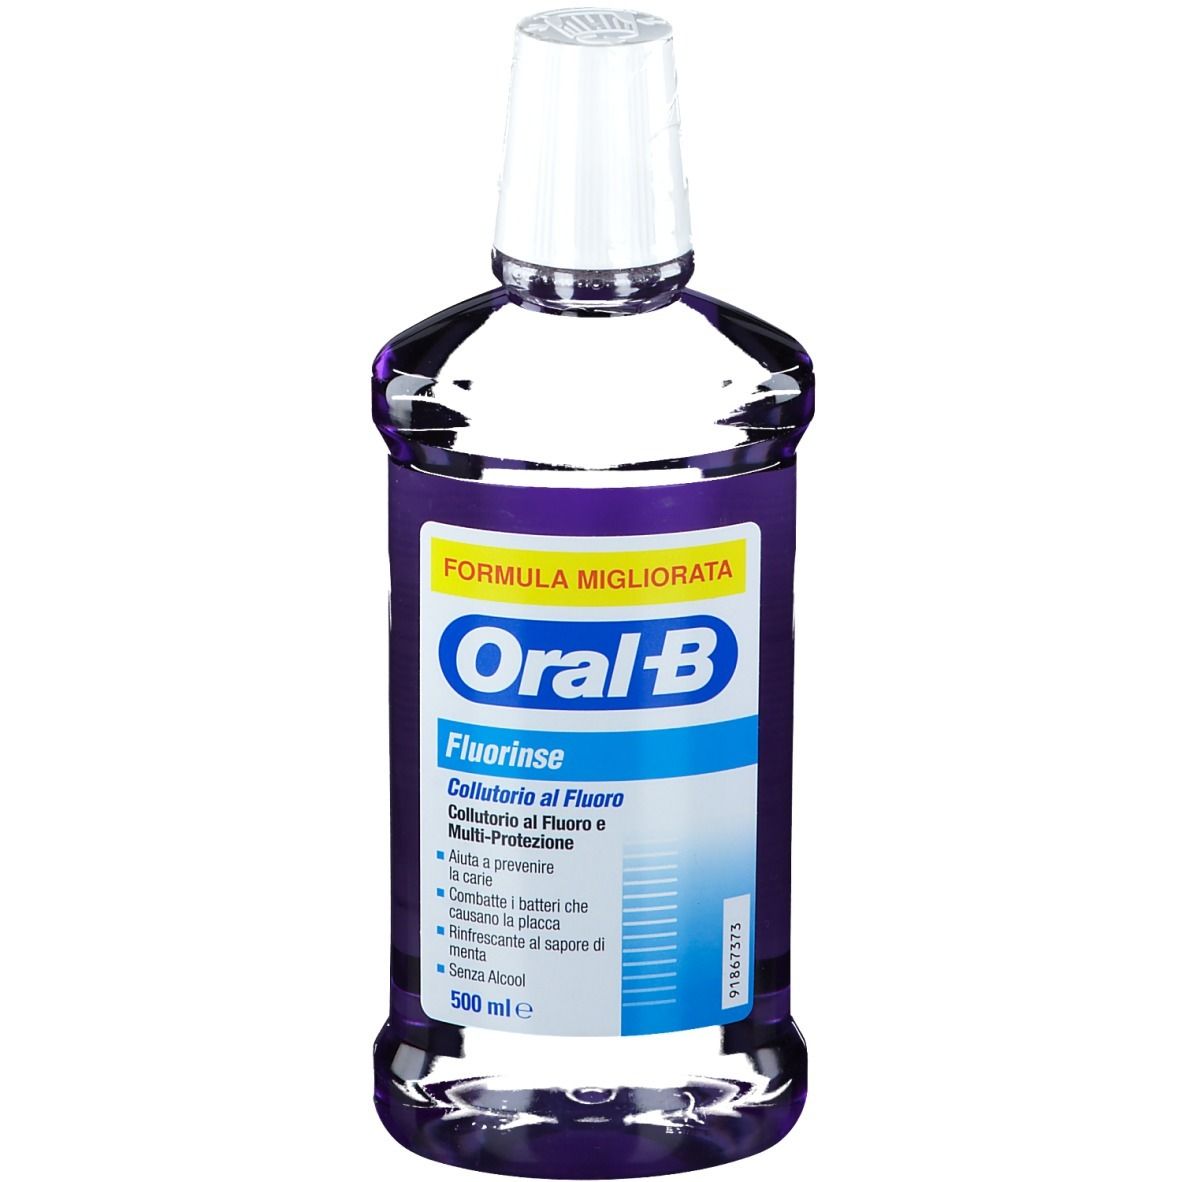 Image of ORAL-B Fluorinse Formula Migliorata